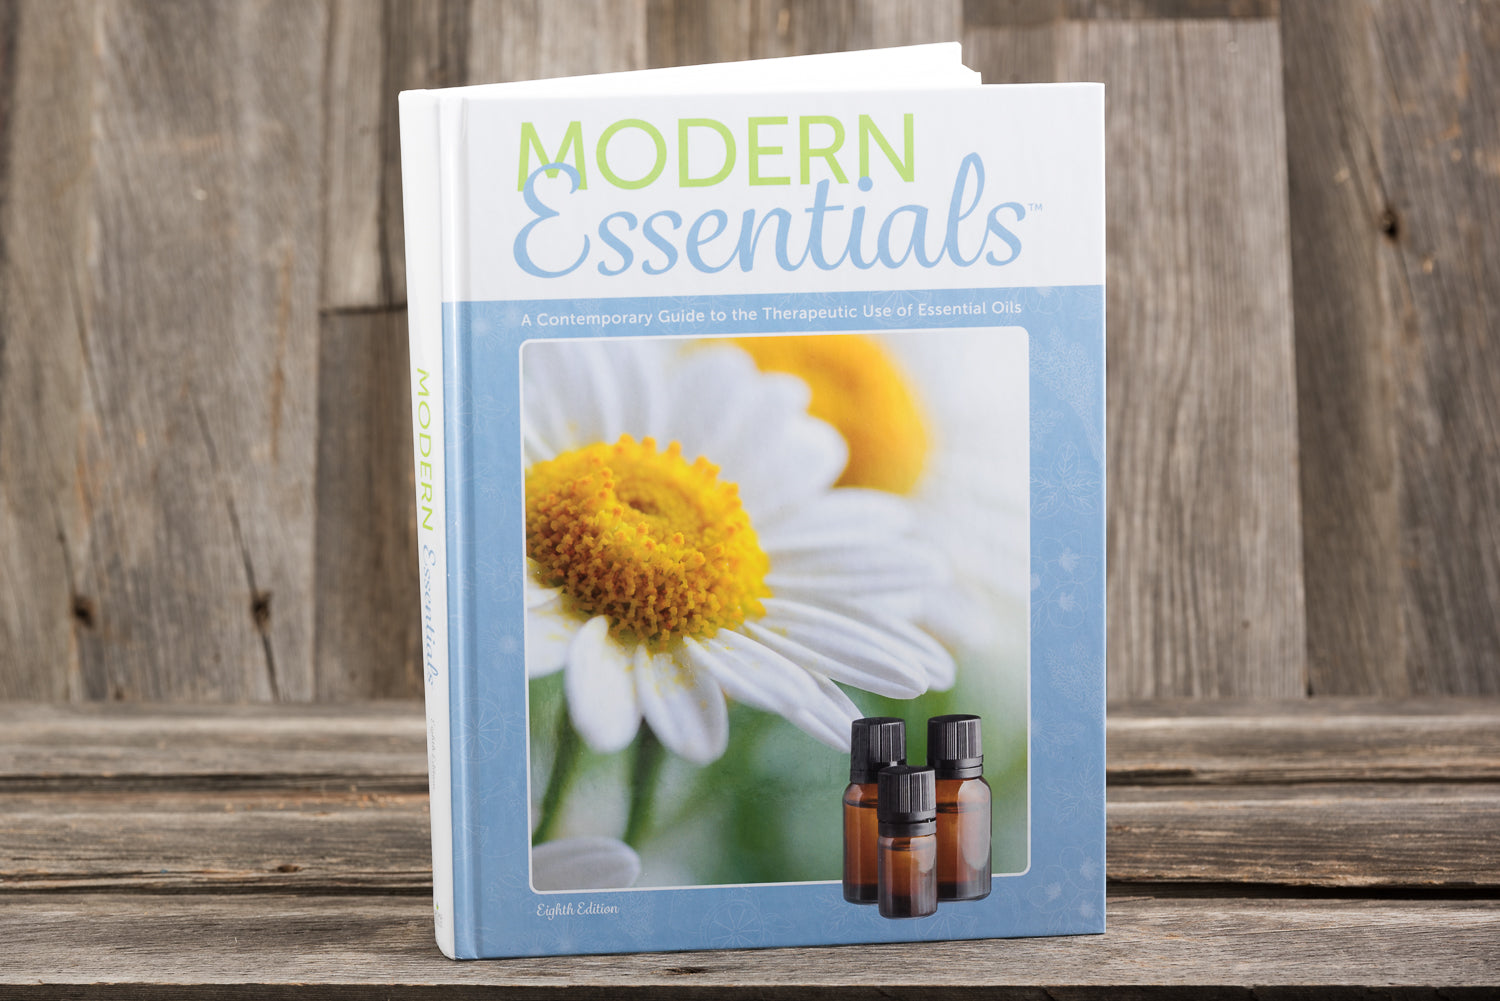 Modern Essentials Manuel: Le meilleur guide d'introduction aux